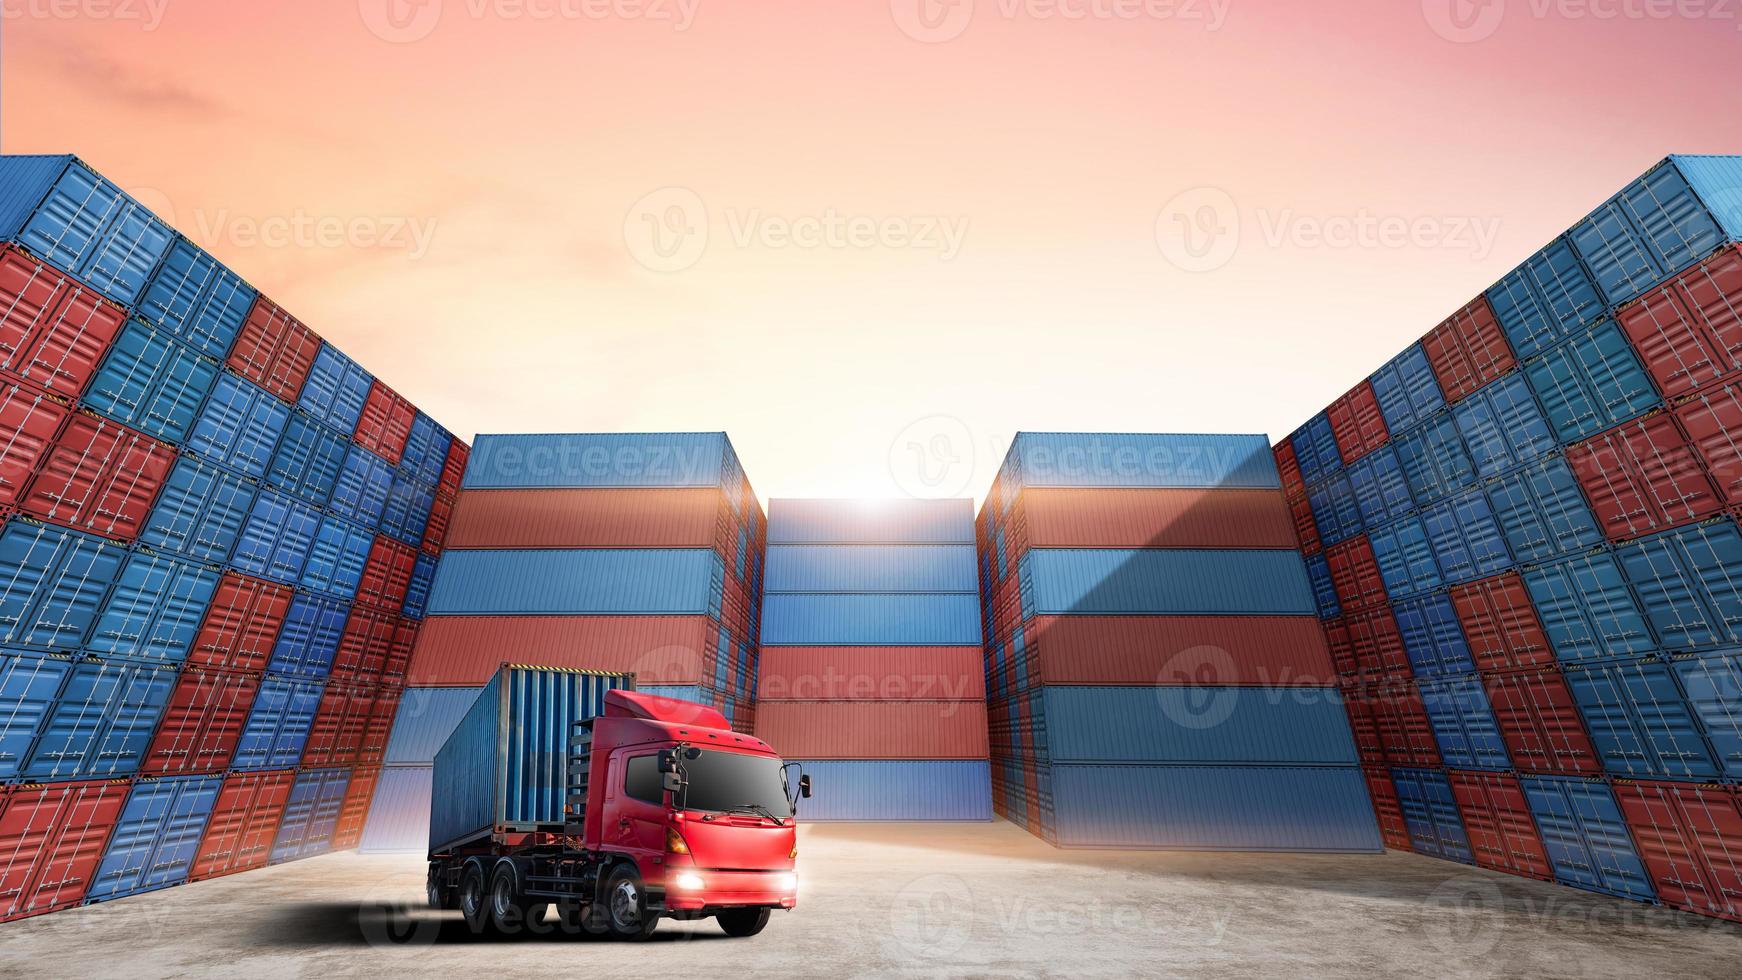 https://static.vecteezy.com/ti/fotos-kostenlos/p1/20173235-transport-von-container-lkw-im-versand-hafen-mit-stapel-von-bunt-behalter-box-hintergrund-kopieren-raum-geschaft-logistik-importieren-export-waren-von-fracht-trager-transport-industrie-konzept-foto.jpg